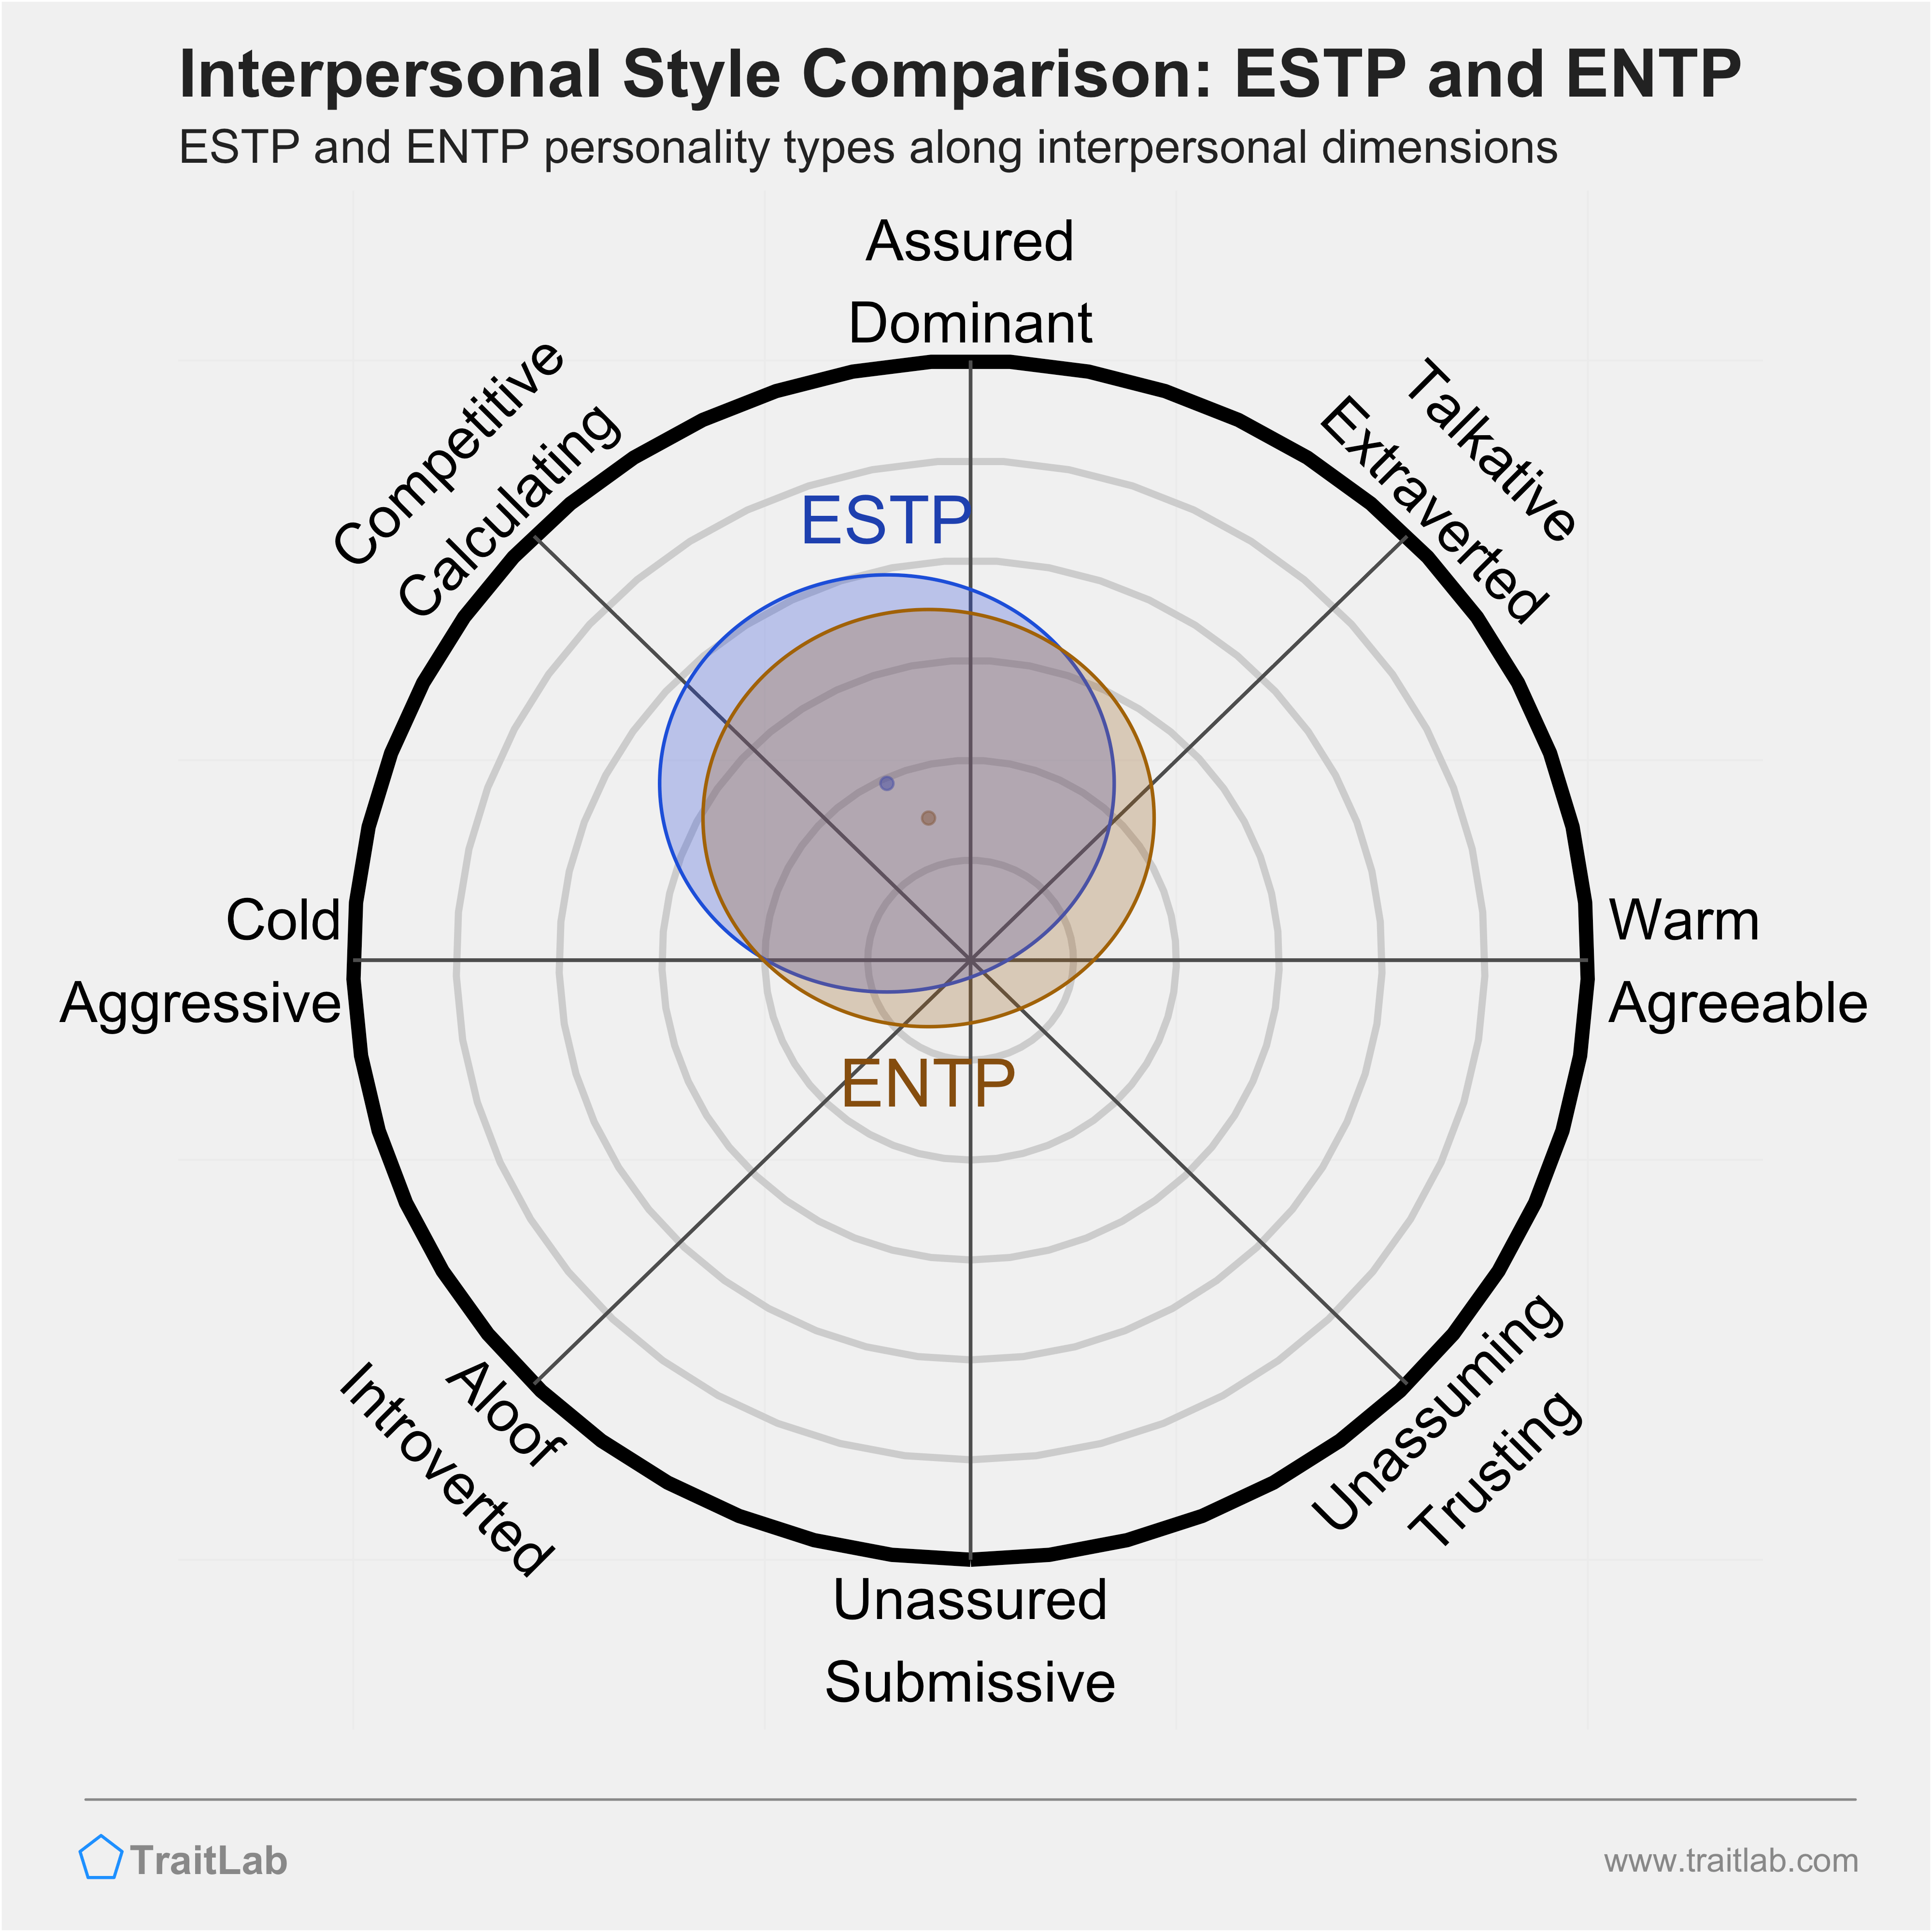 ESTP and ENTP comparison across interpersonal dimensions